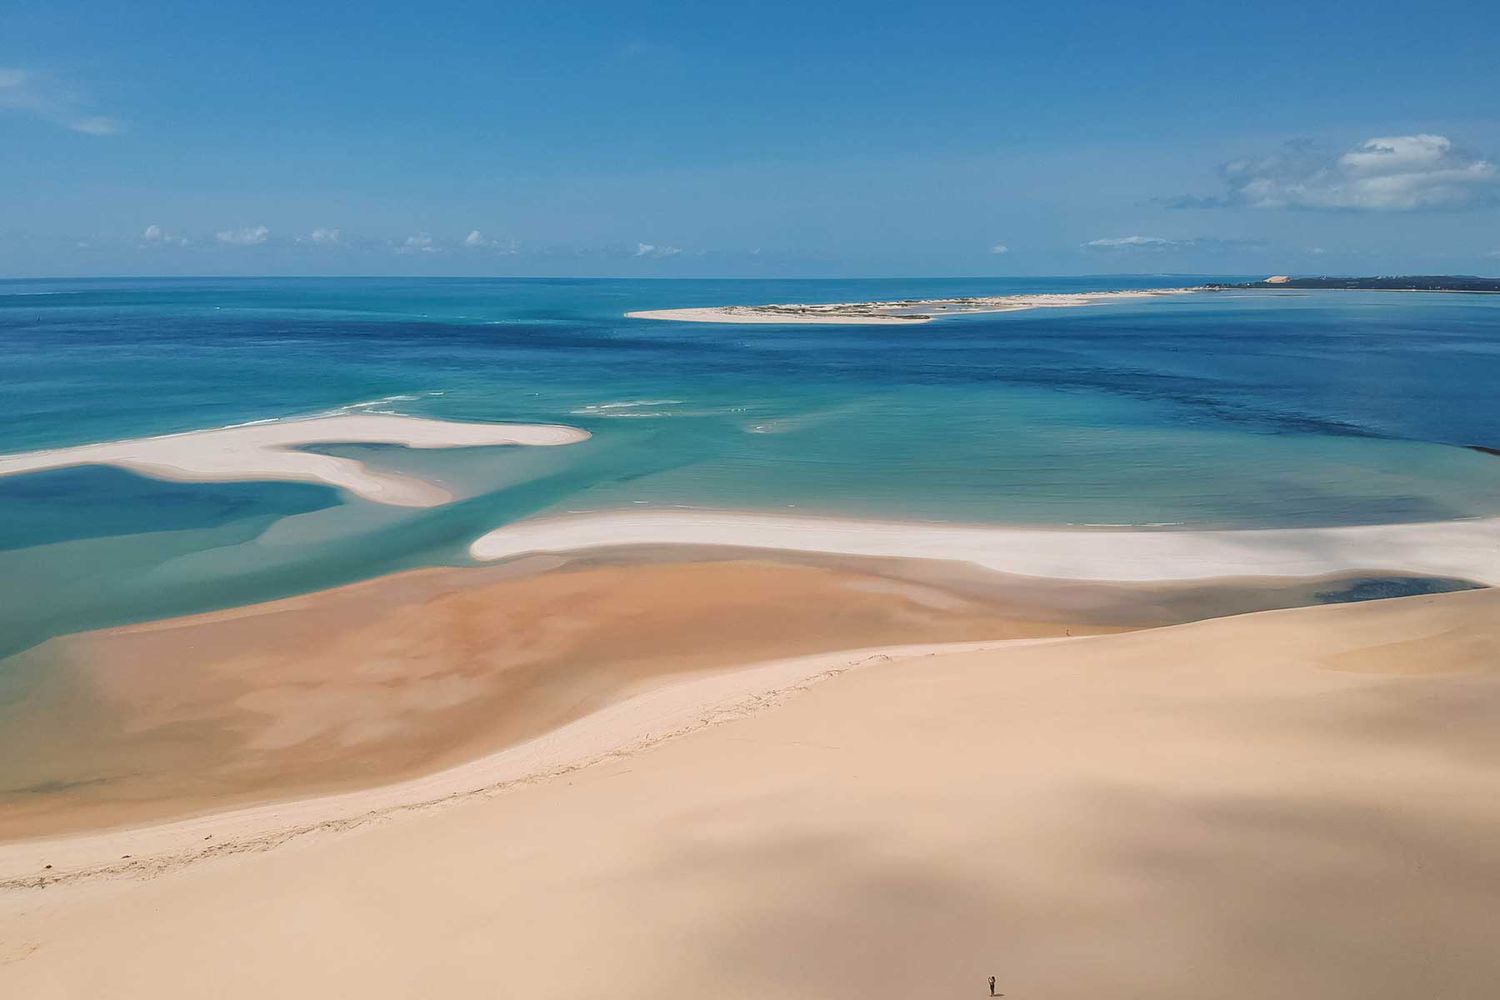 Des bancs de sable à couper le souffle sur une île aux eaux turquoises dans l'archipel de Bazaruto, au Mozambique